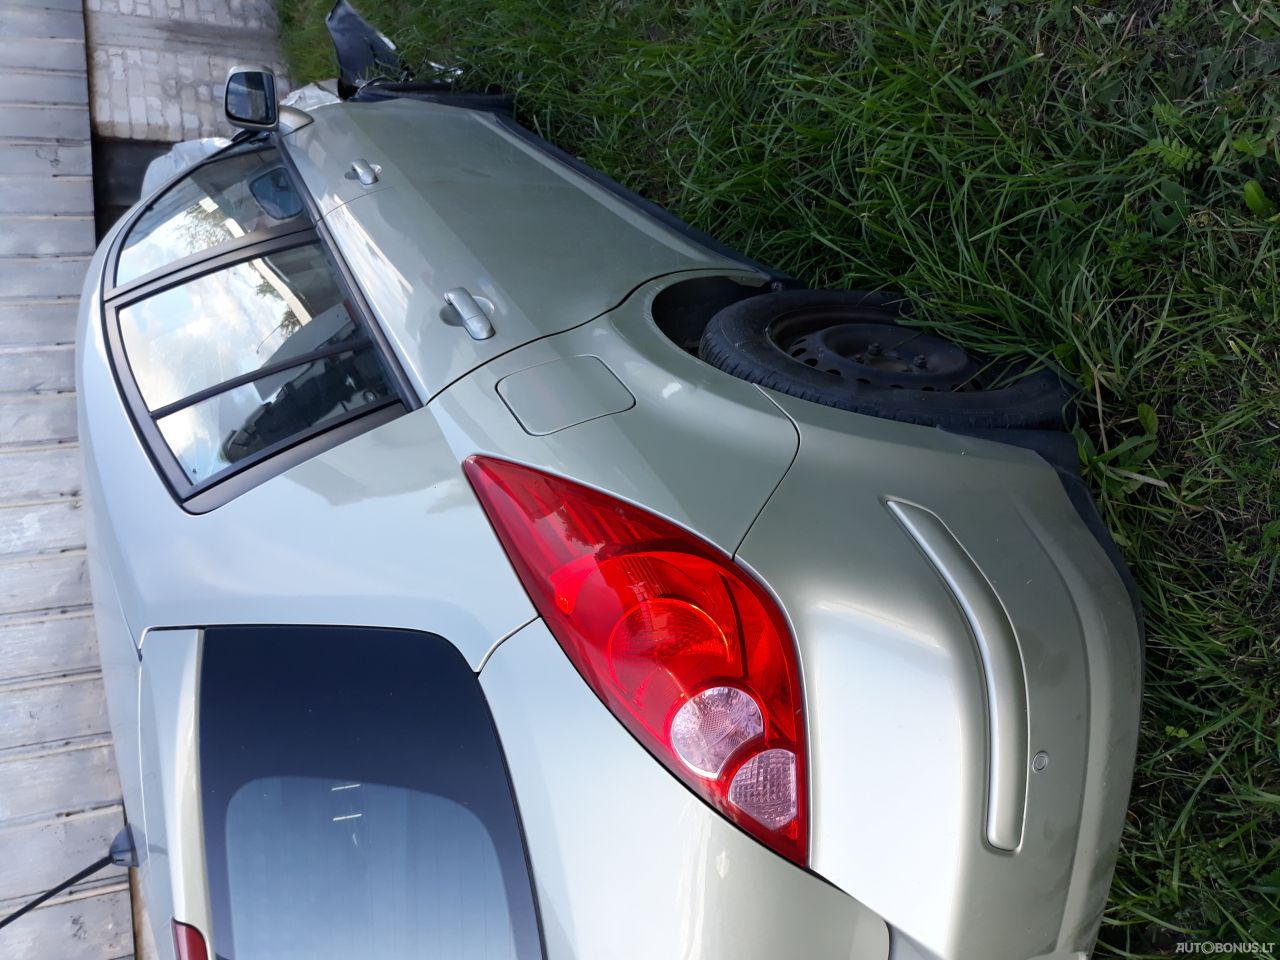 Nissan Tiida, Hatchback